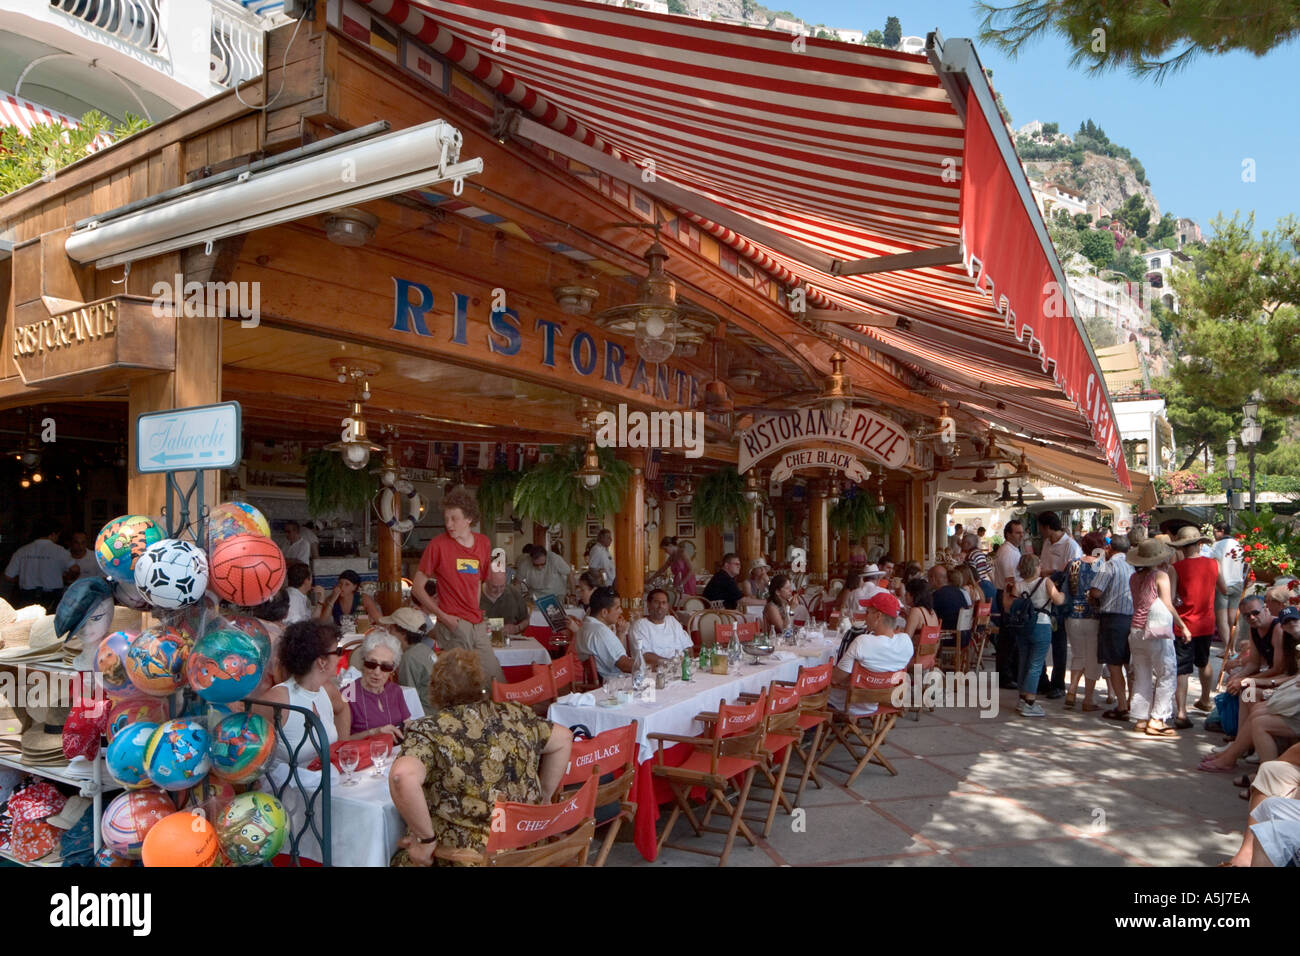 Restaurante en la playa y las tiendas, Positano, Amalfi Costa (Costiera Amalfitana), Riviera Napolitana, Italia Foto de stock